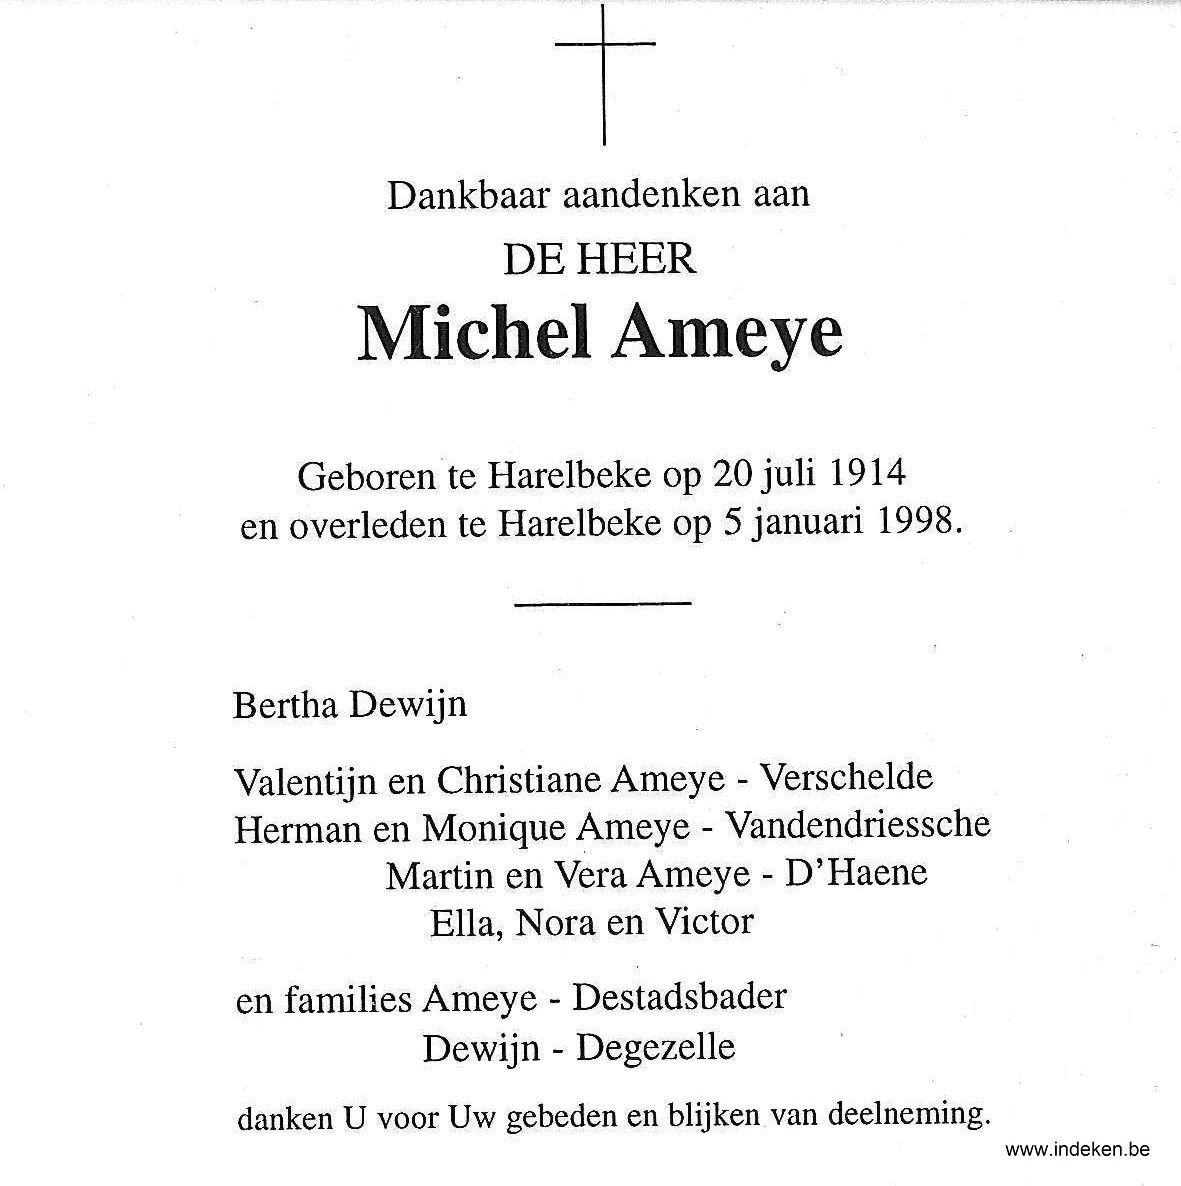 Michel Ameye